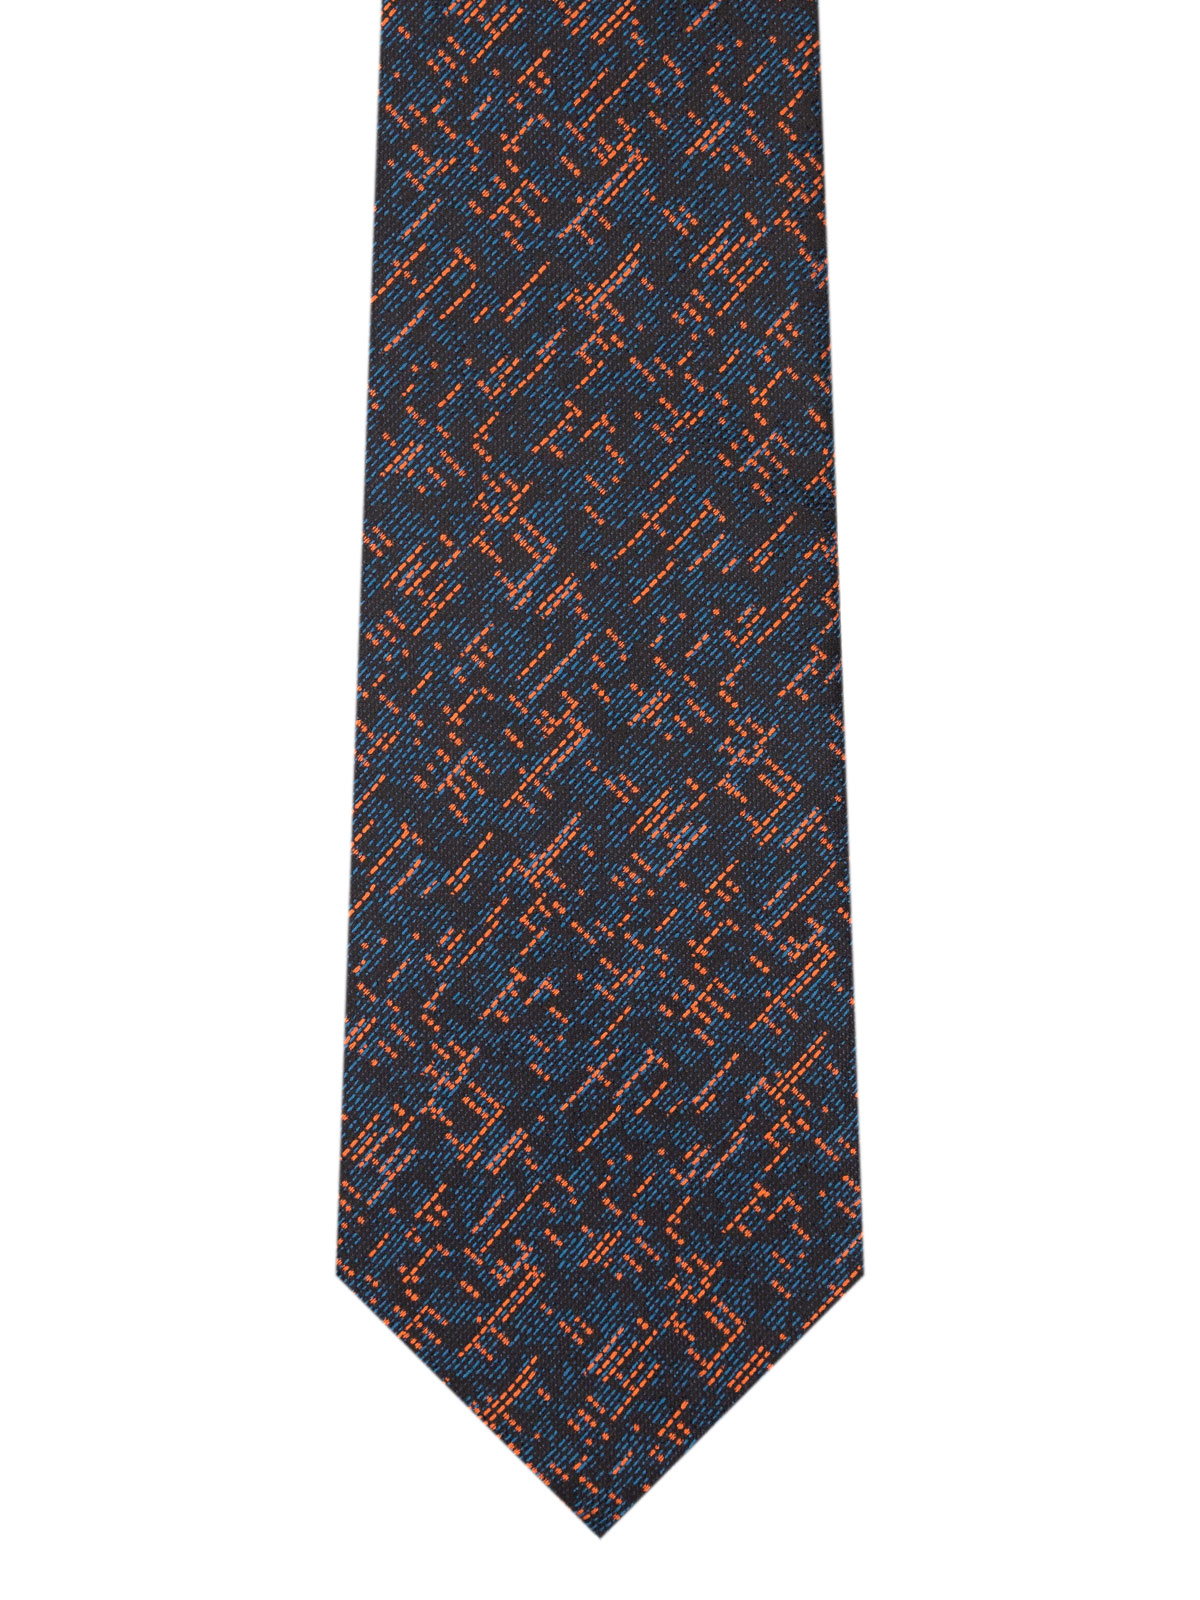 Μαύρη γραβάτα με πορτοκαλί κλωστές - 10202 - € 14.06 img2